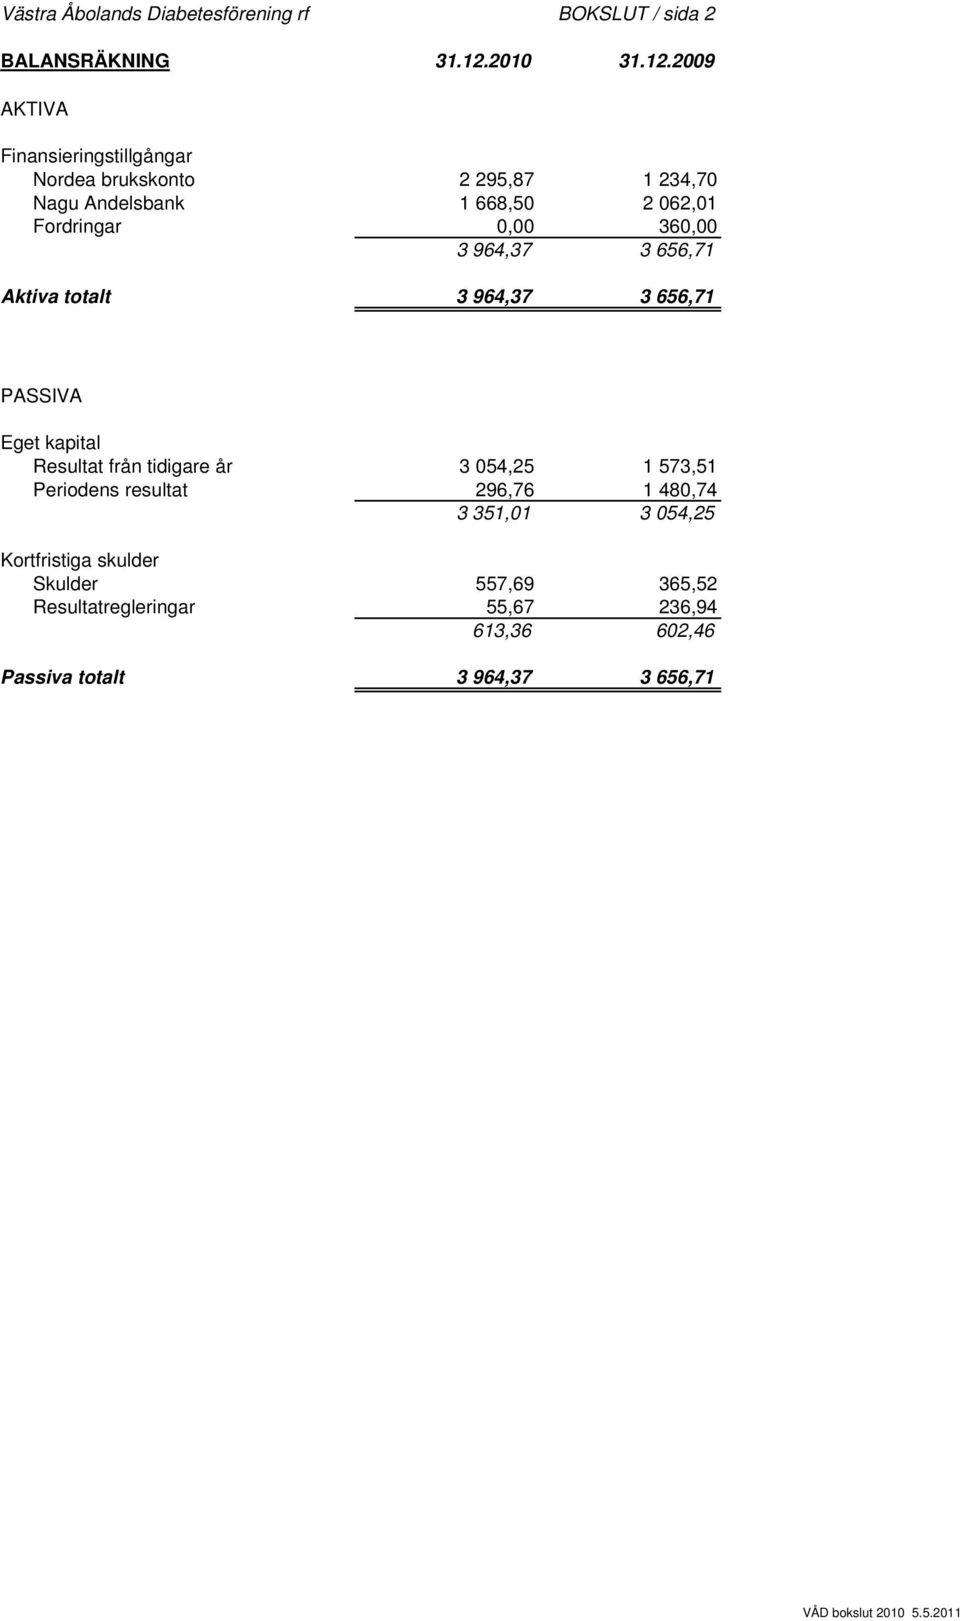 2009 AKTIVA Finansieringstillgångar Nordea brukskonto 2 295,87 1 234,70 Nagu Andelsbank 1 668,50 2 062,01 Fordringar 0,00